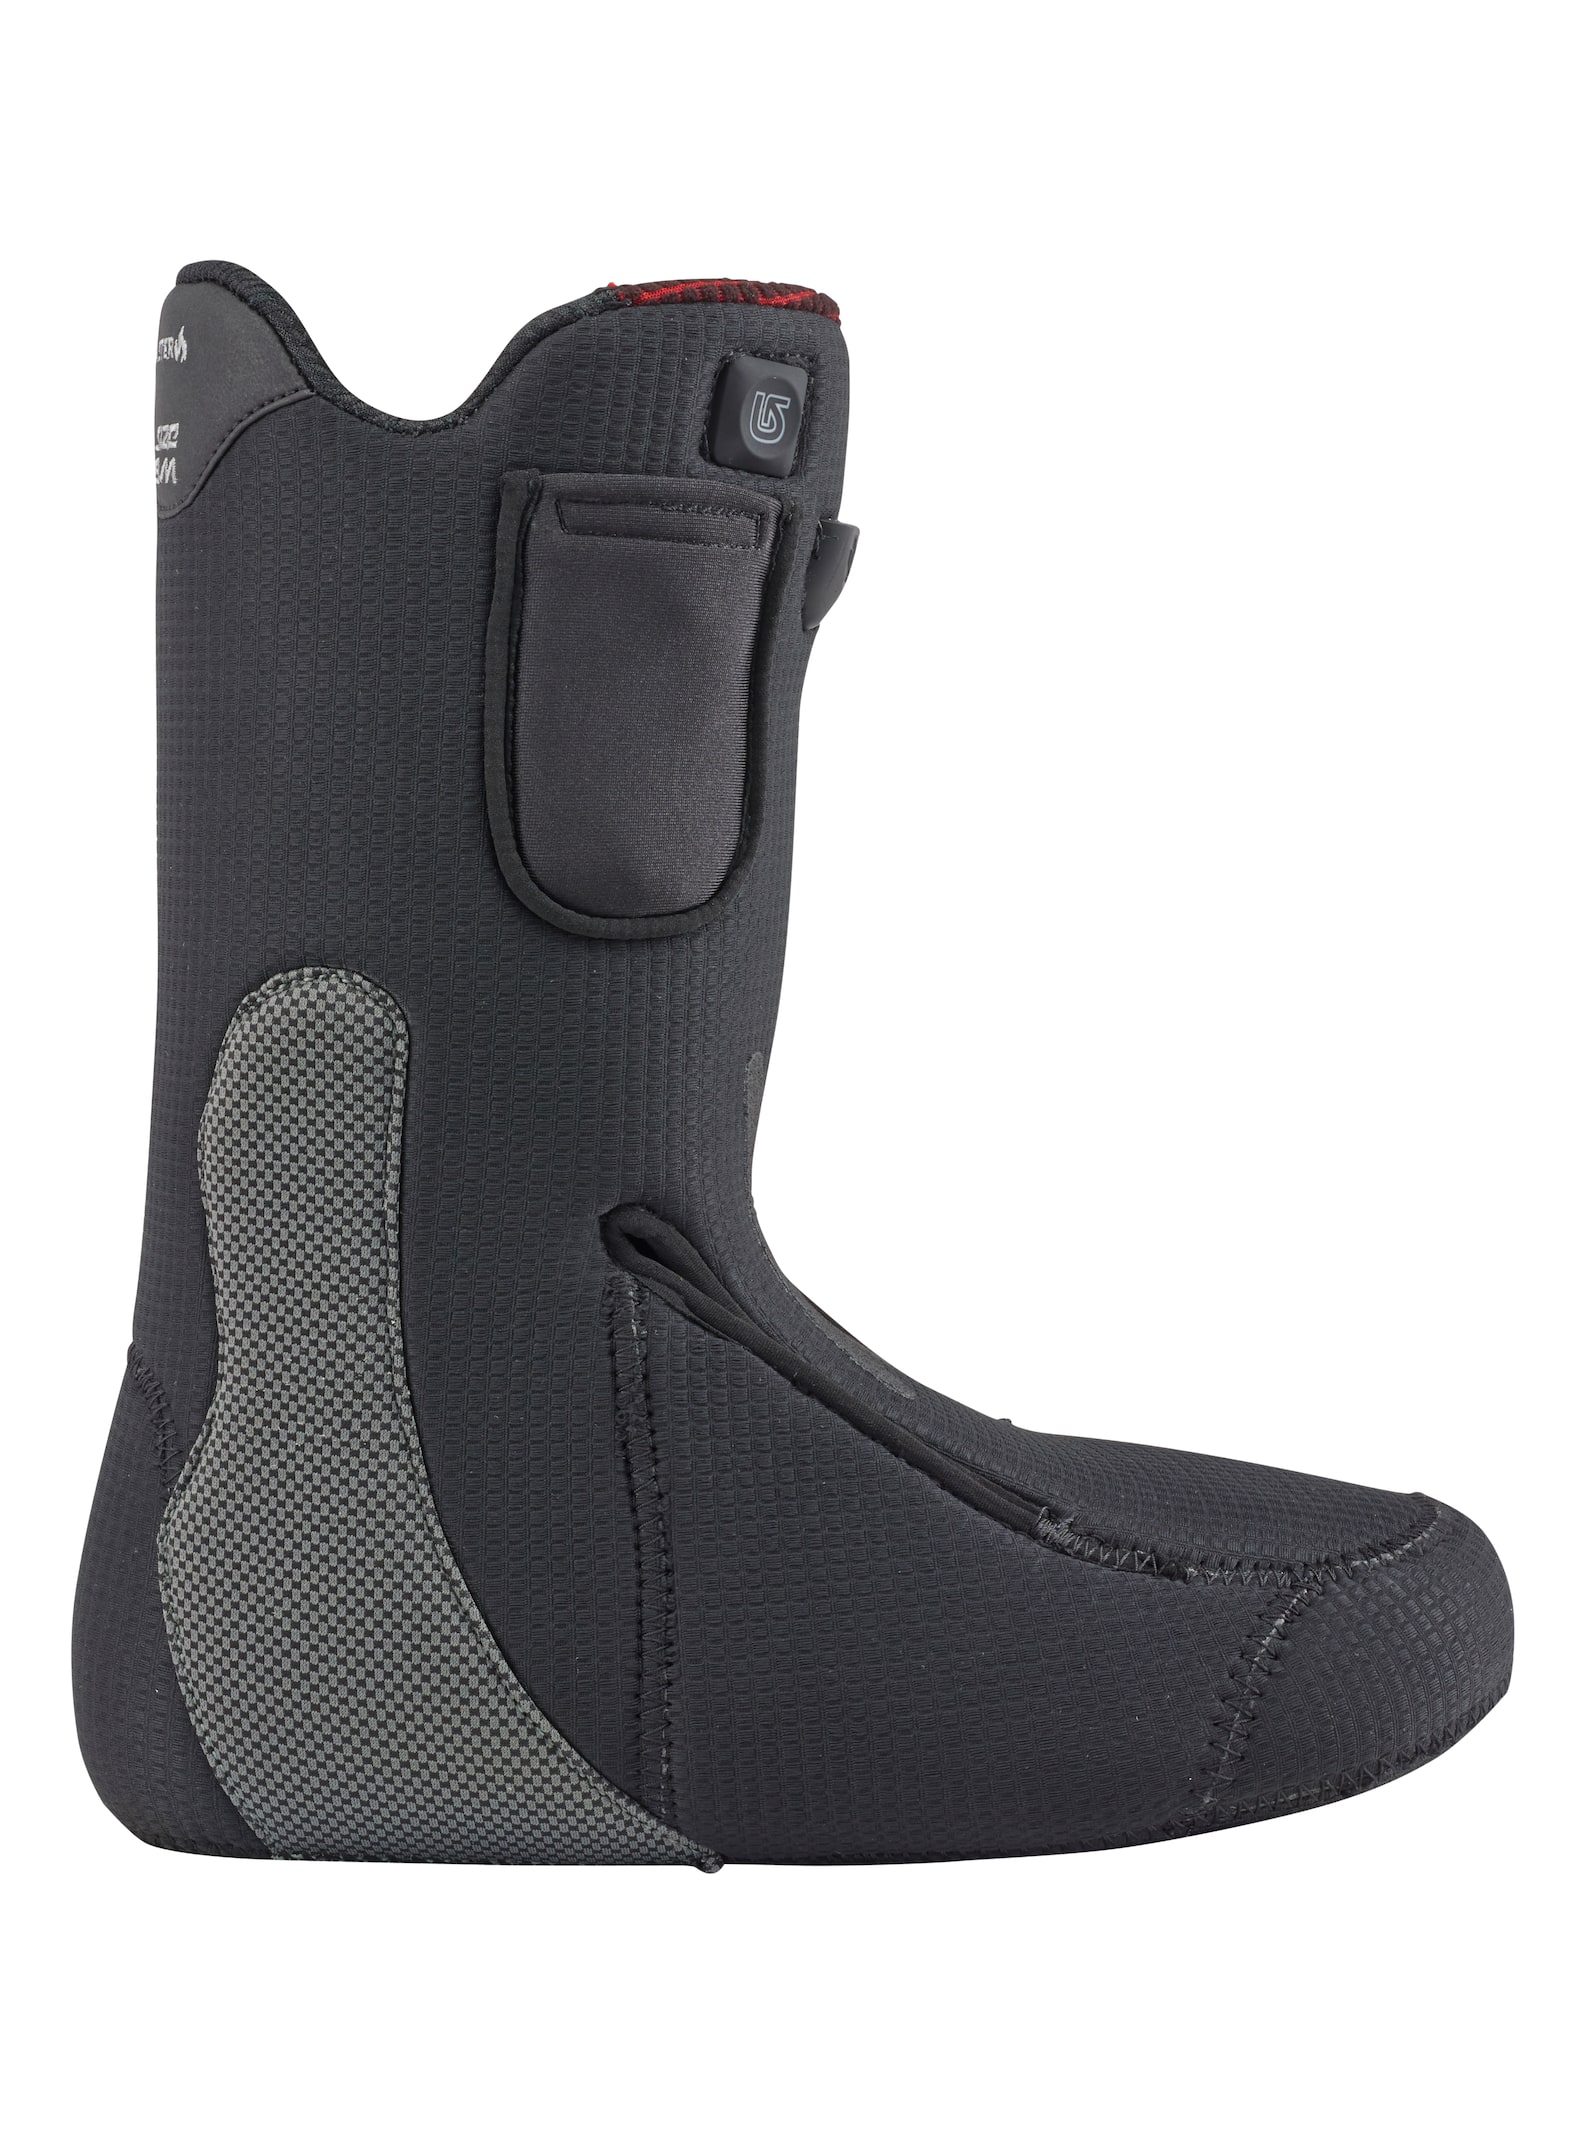 Burton - Chaussons pour boots de snowboard Toaster homme, Black, 10